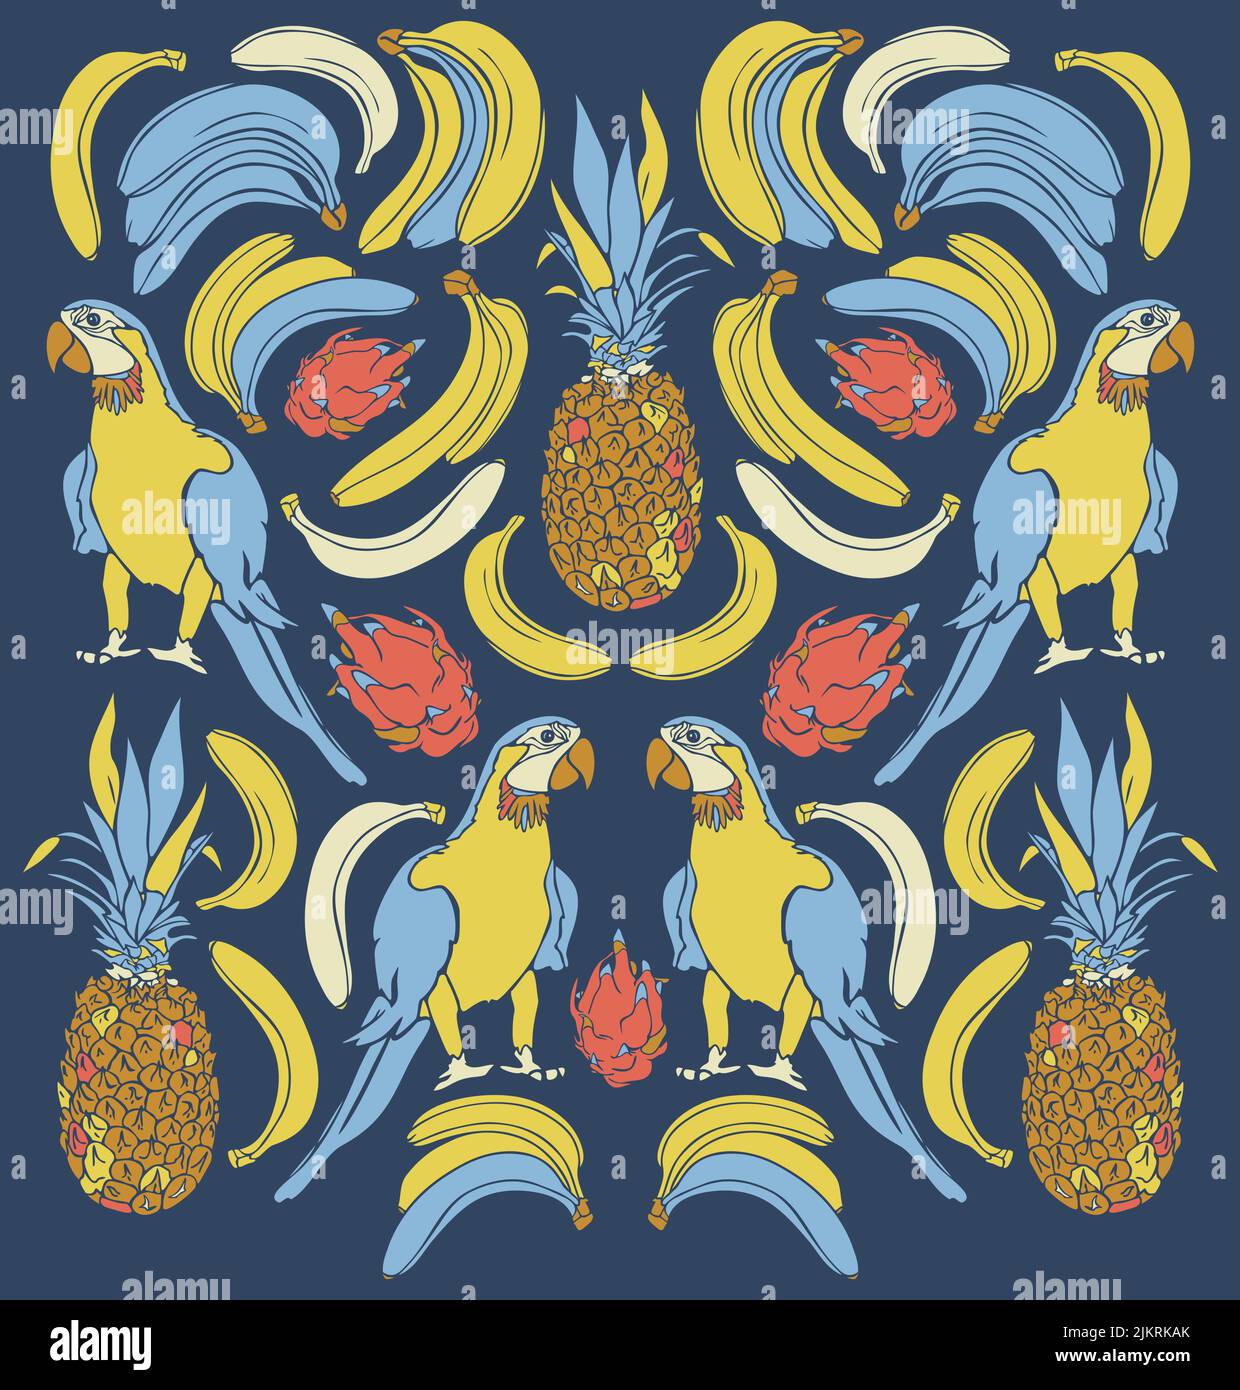 Vektorgrafik mit Papageien und exotischen Früchten. Design mit Ara, Zirbeldrüsen, Drachenfrüchten und Bananen. Stock Vektor